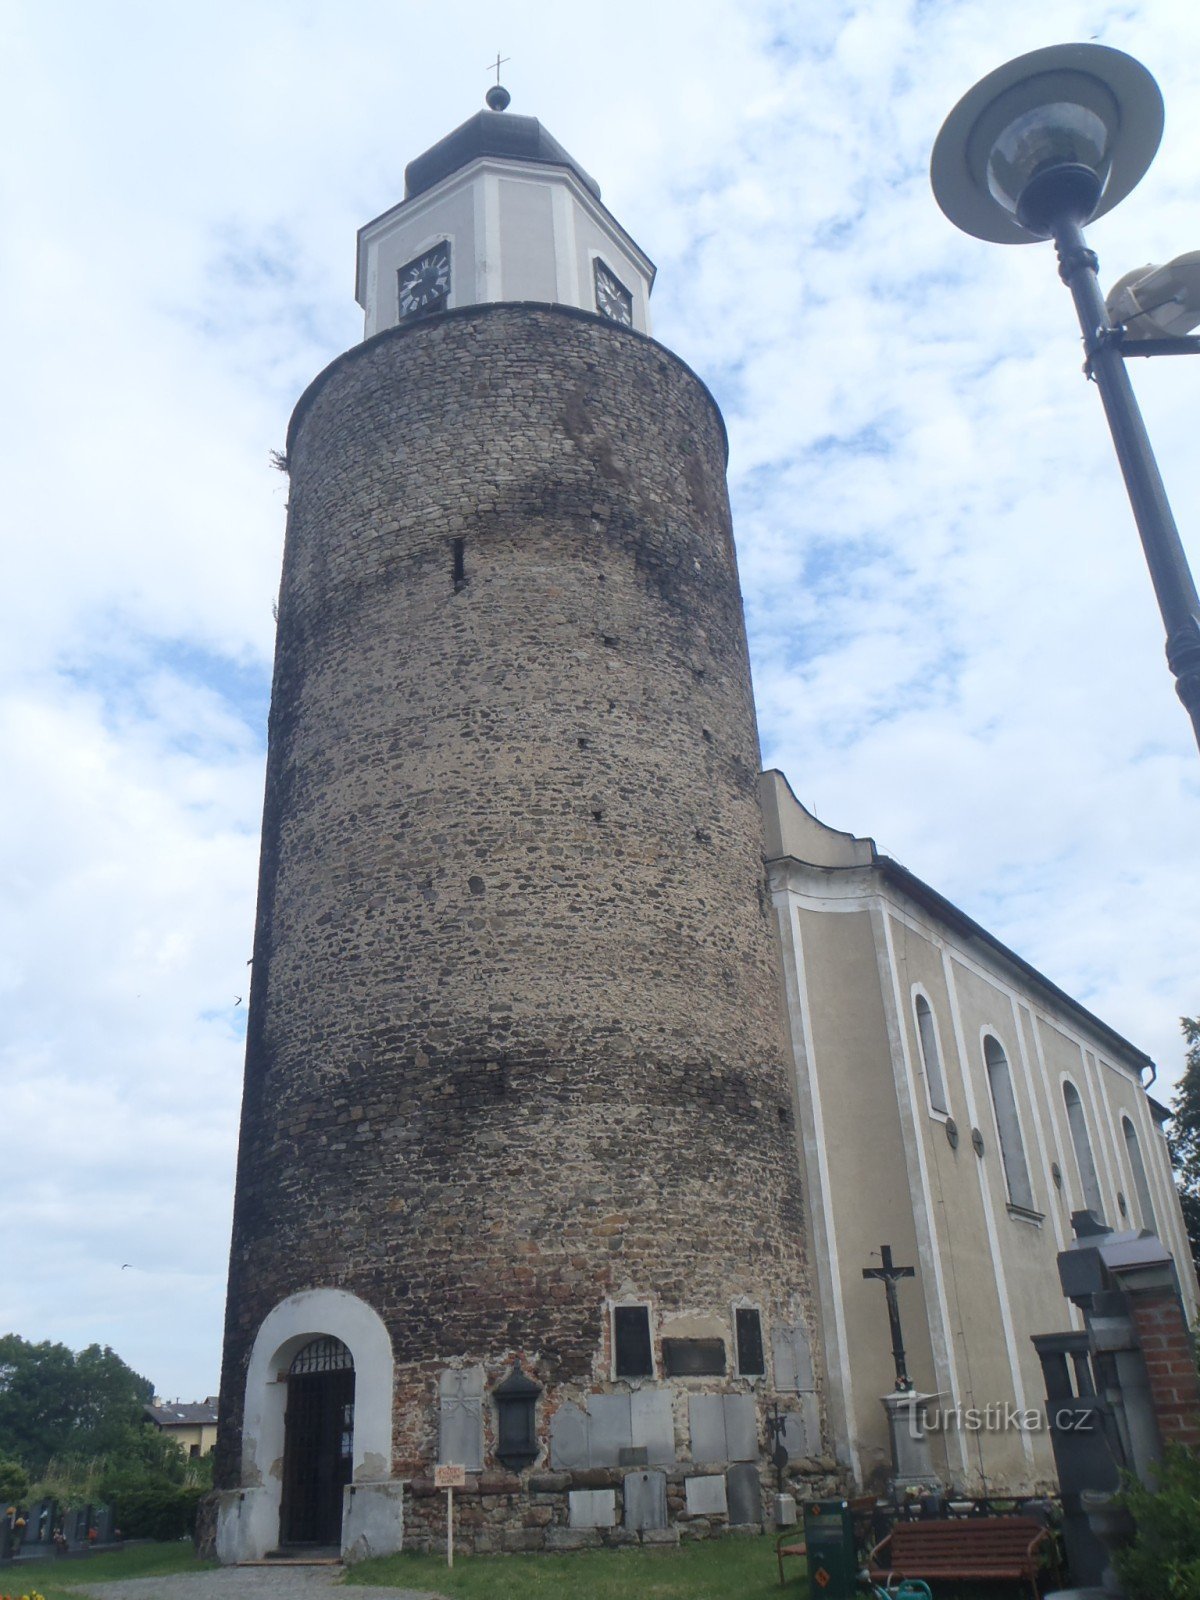 Torony és a templom közelről